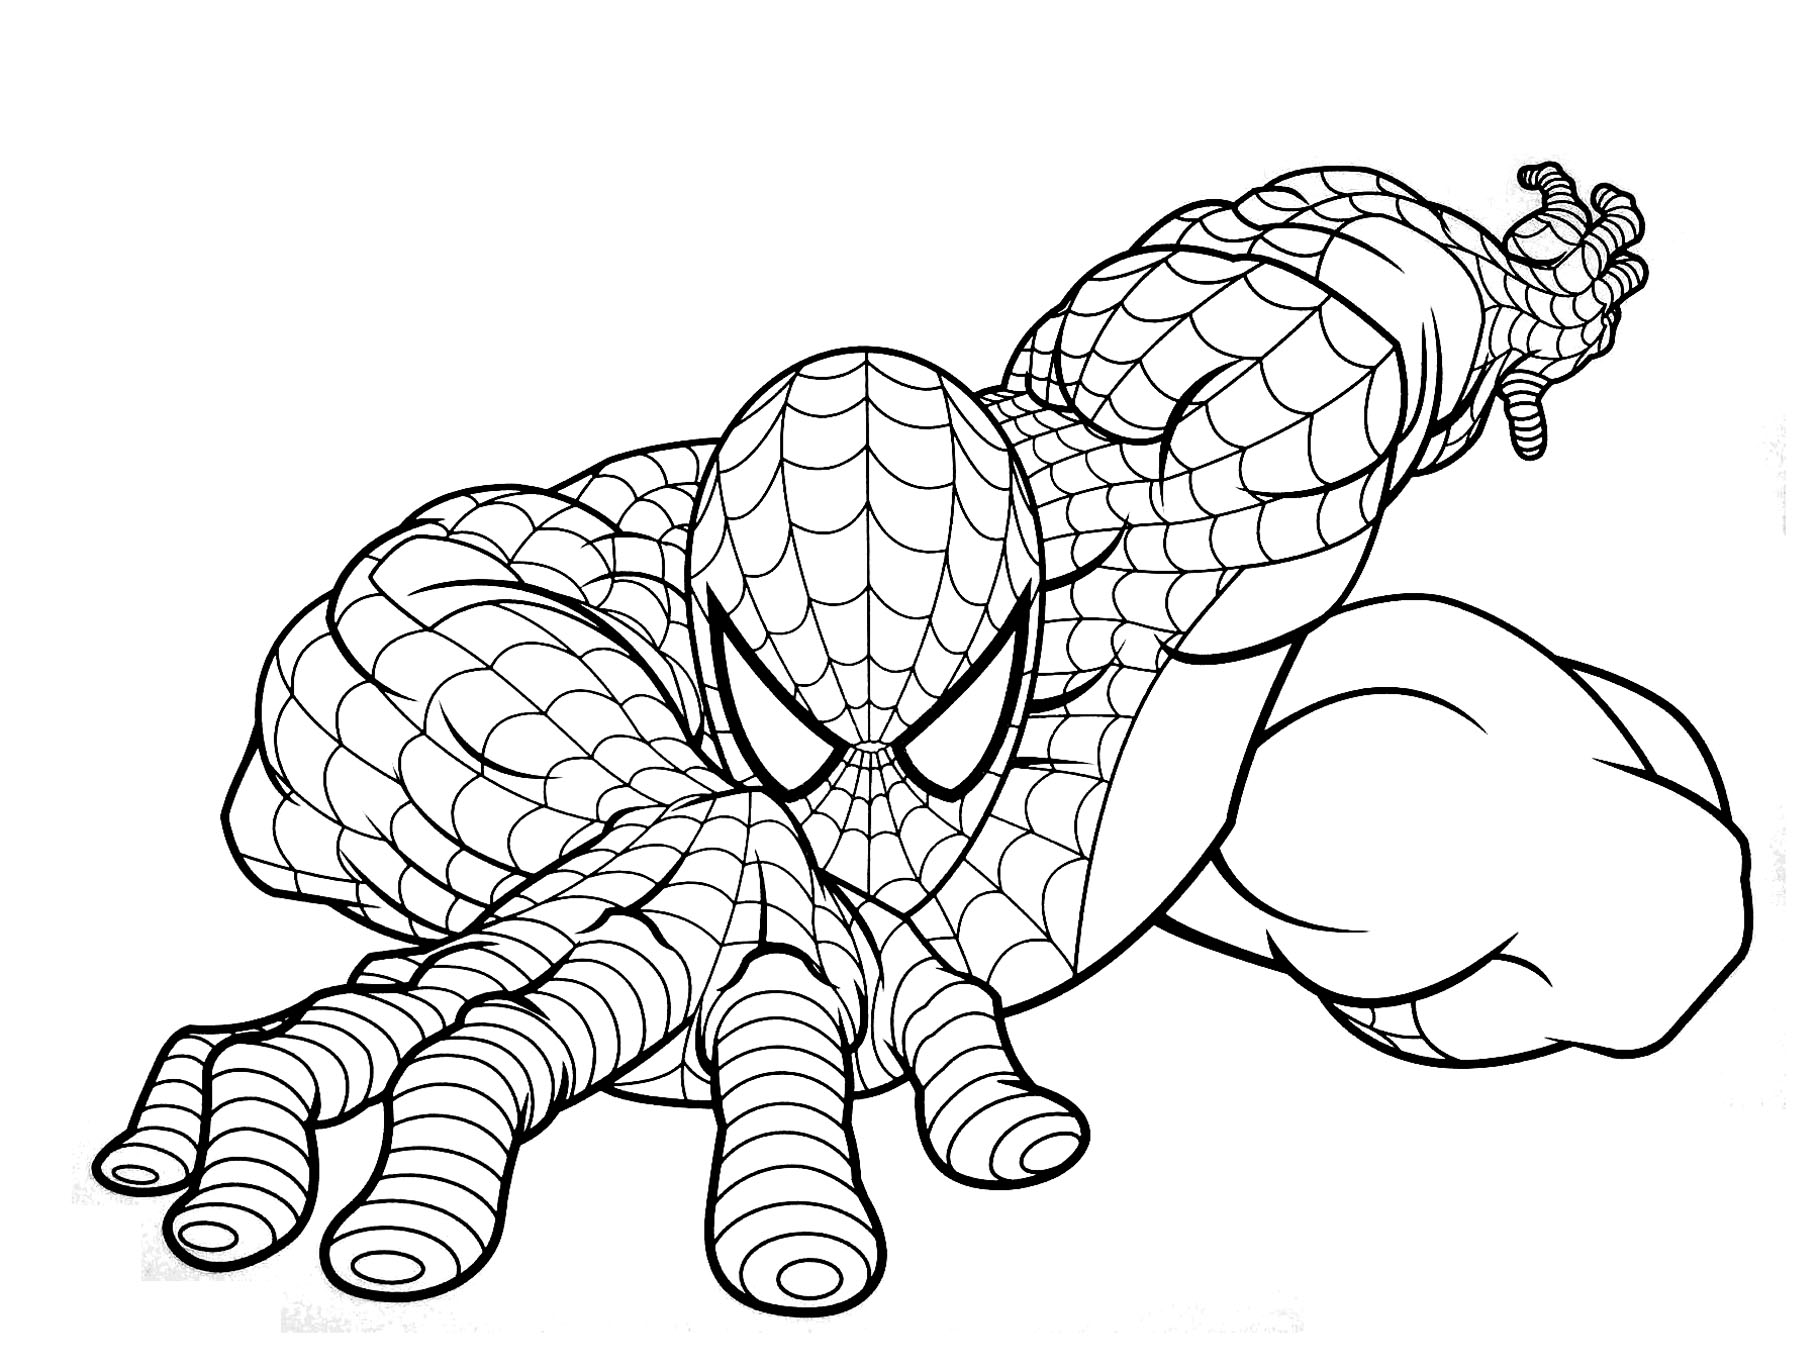 Dibujo gratis de Spiderman para imprimir y colorear - Spiderman - Just  Color Niños : Dibujos para colorear para niños